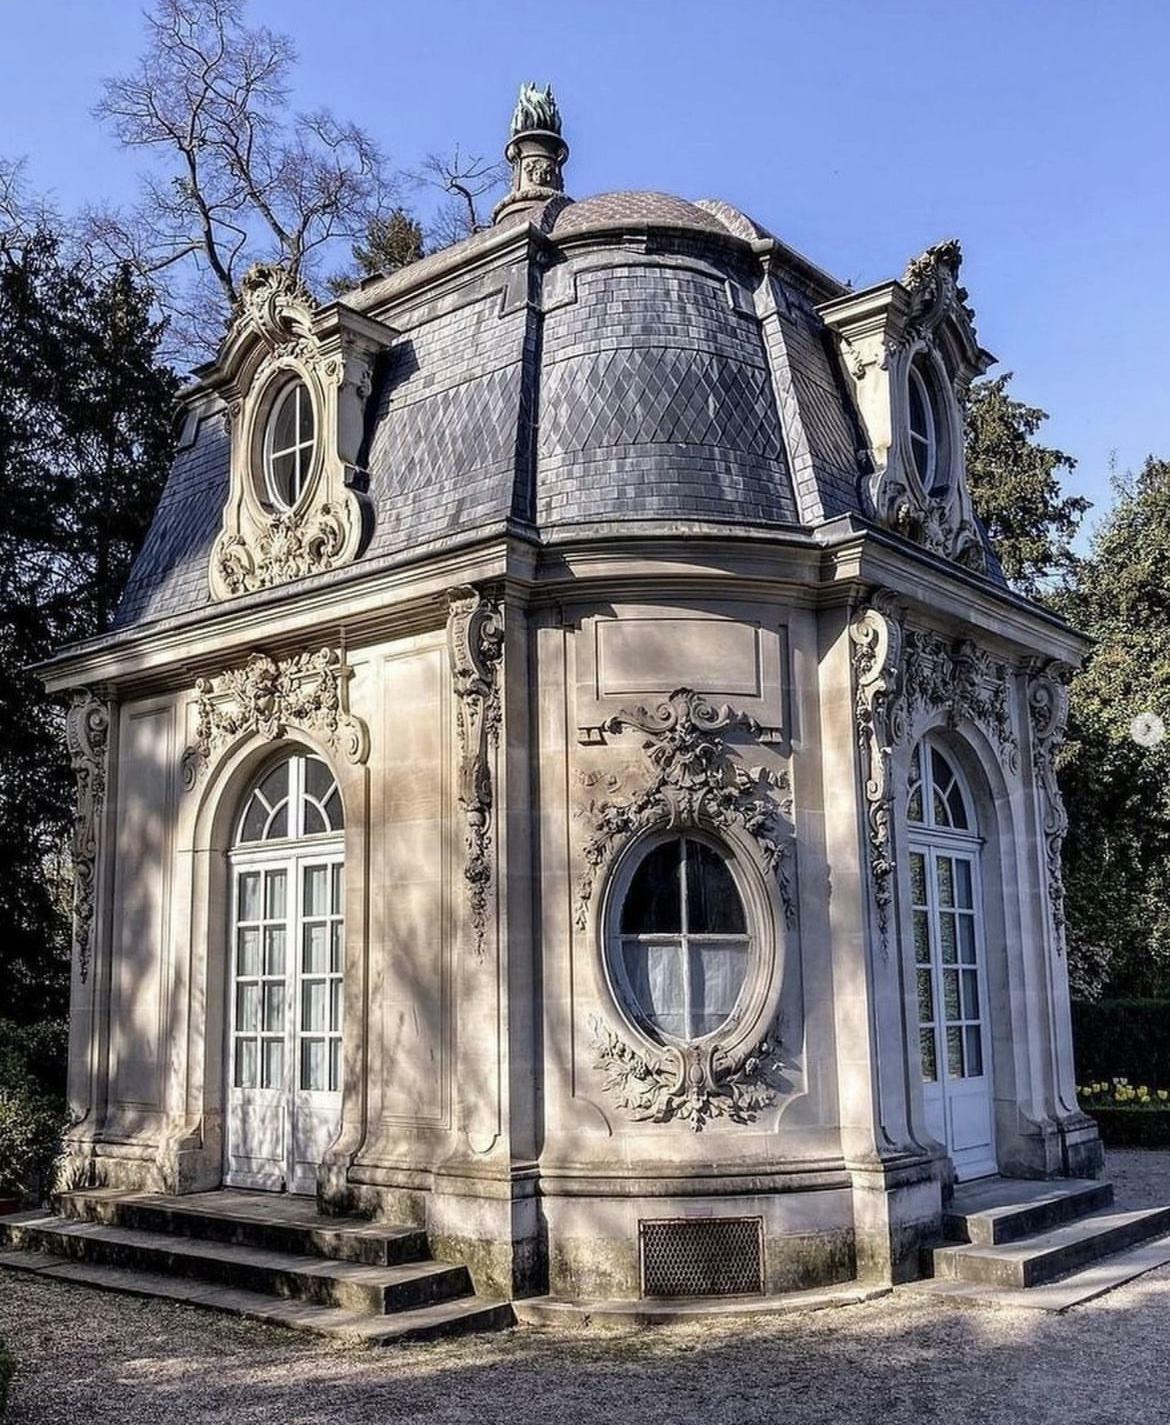 Pavilion Louis Xv A 19th Century Folly In The Parc De Bagatelle, Paris